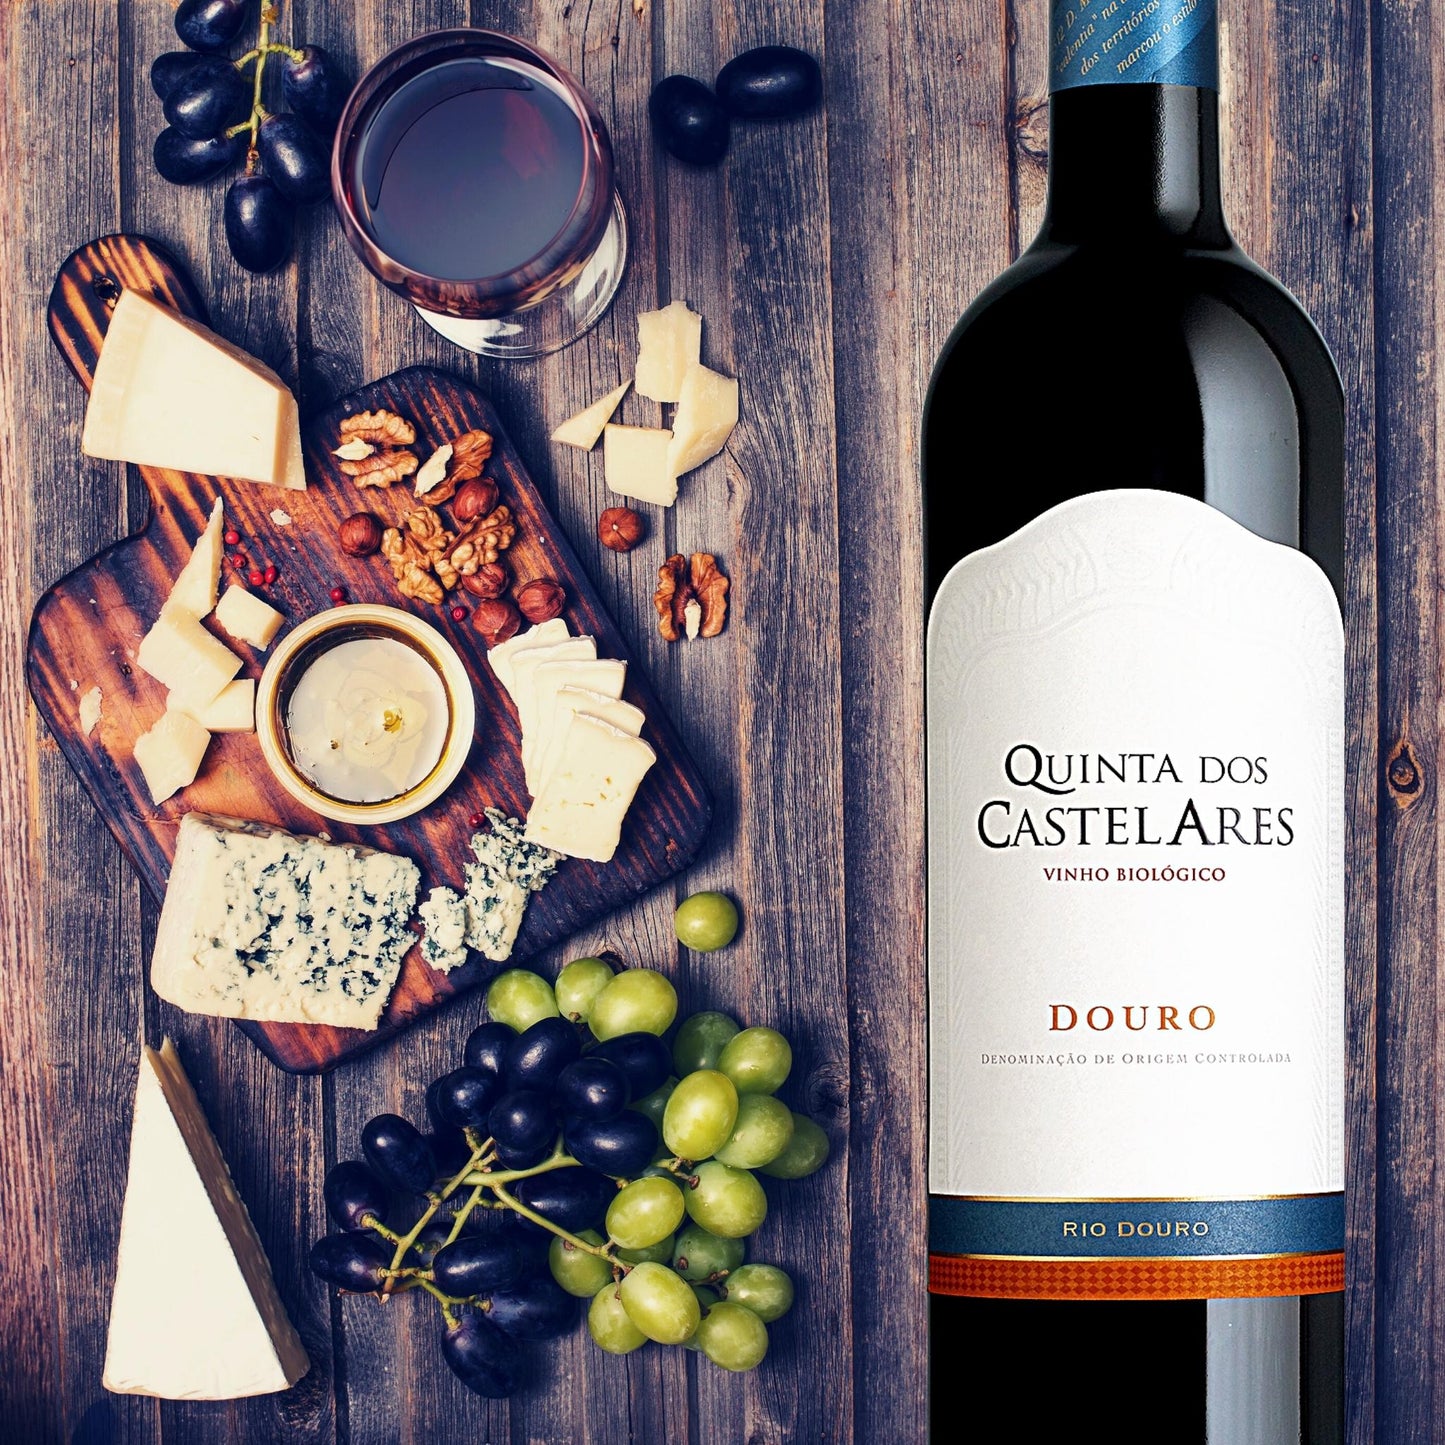 
                  
                    Quinta dos Castelares Colheita Rotwein, Biowein aus dem Douro / Portugal. Bild mit Weinflasche vor einem Holztisch mit Weinglas, Käse auf einem Holzbrett und grünen und roten Weintrauben.
                  
                